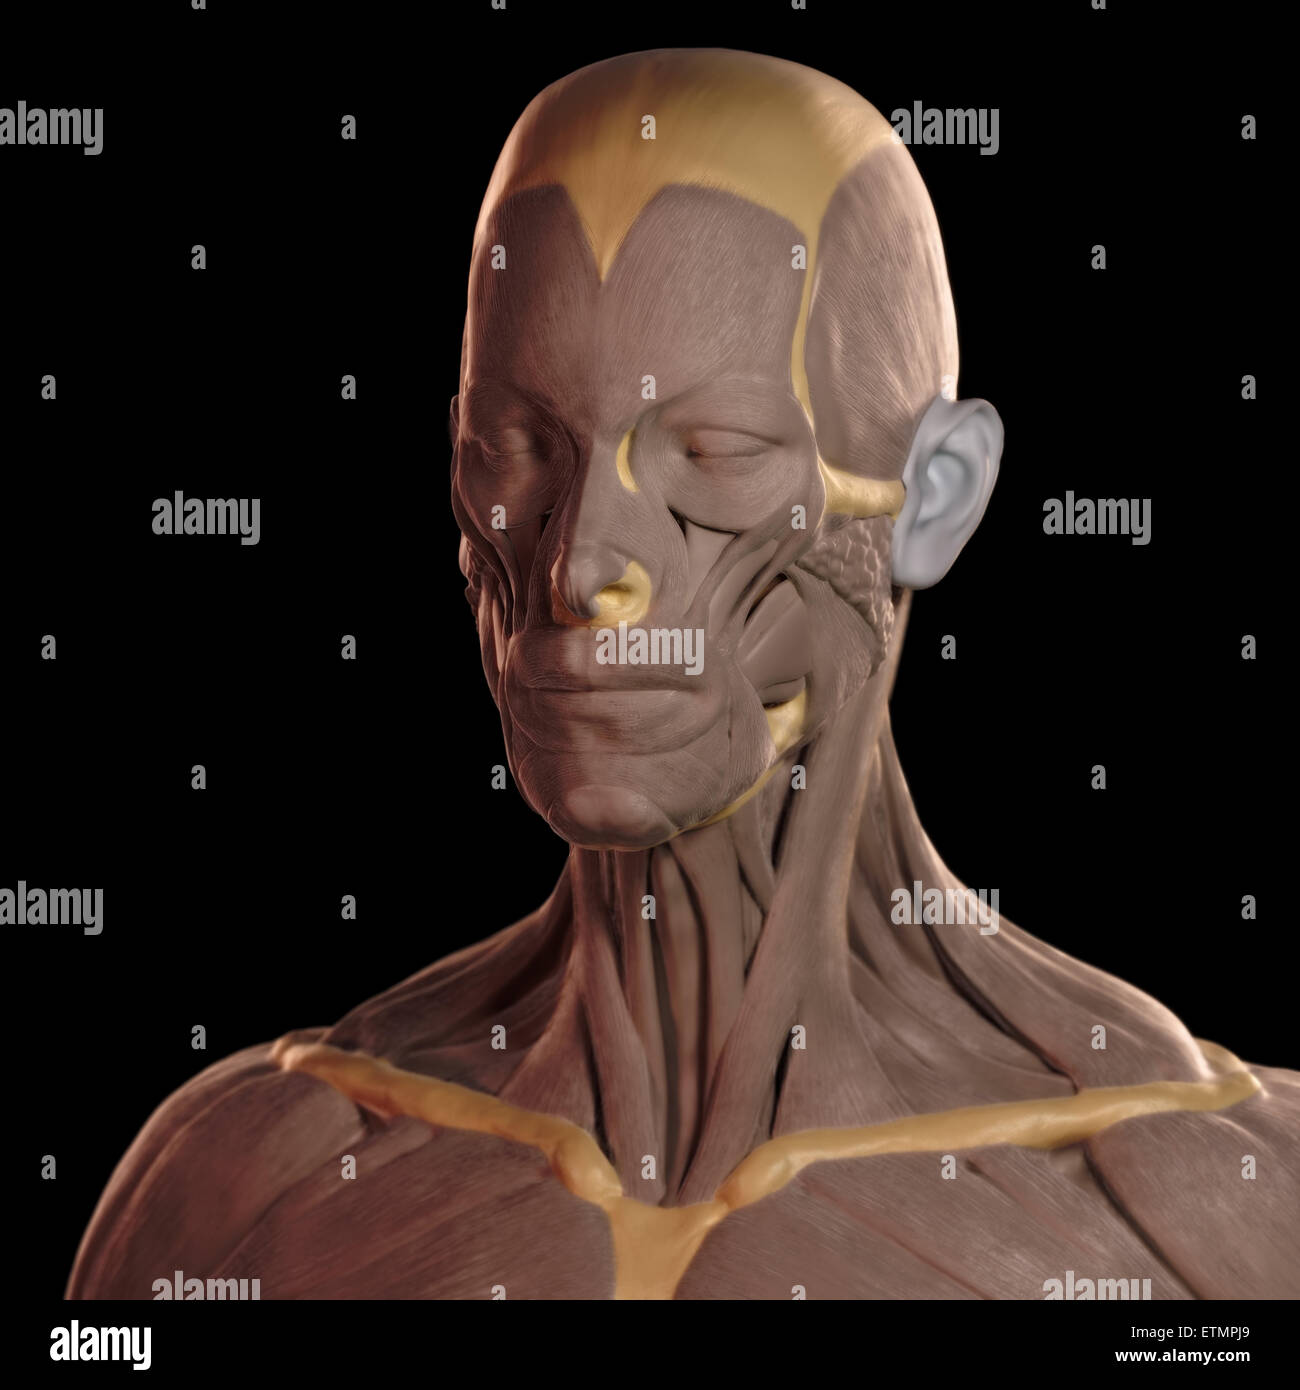 Imagen conceptual en el estilo de un modelo de arcilla de los músculos de la cara. Foto de stock